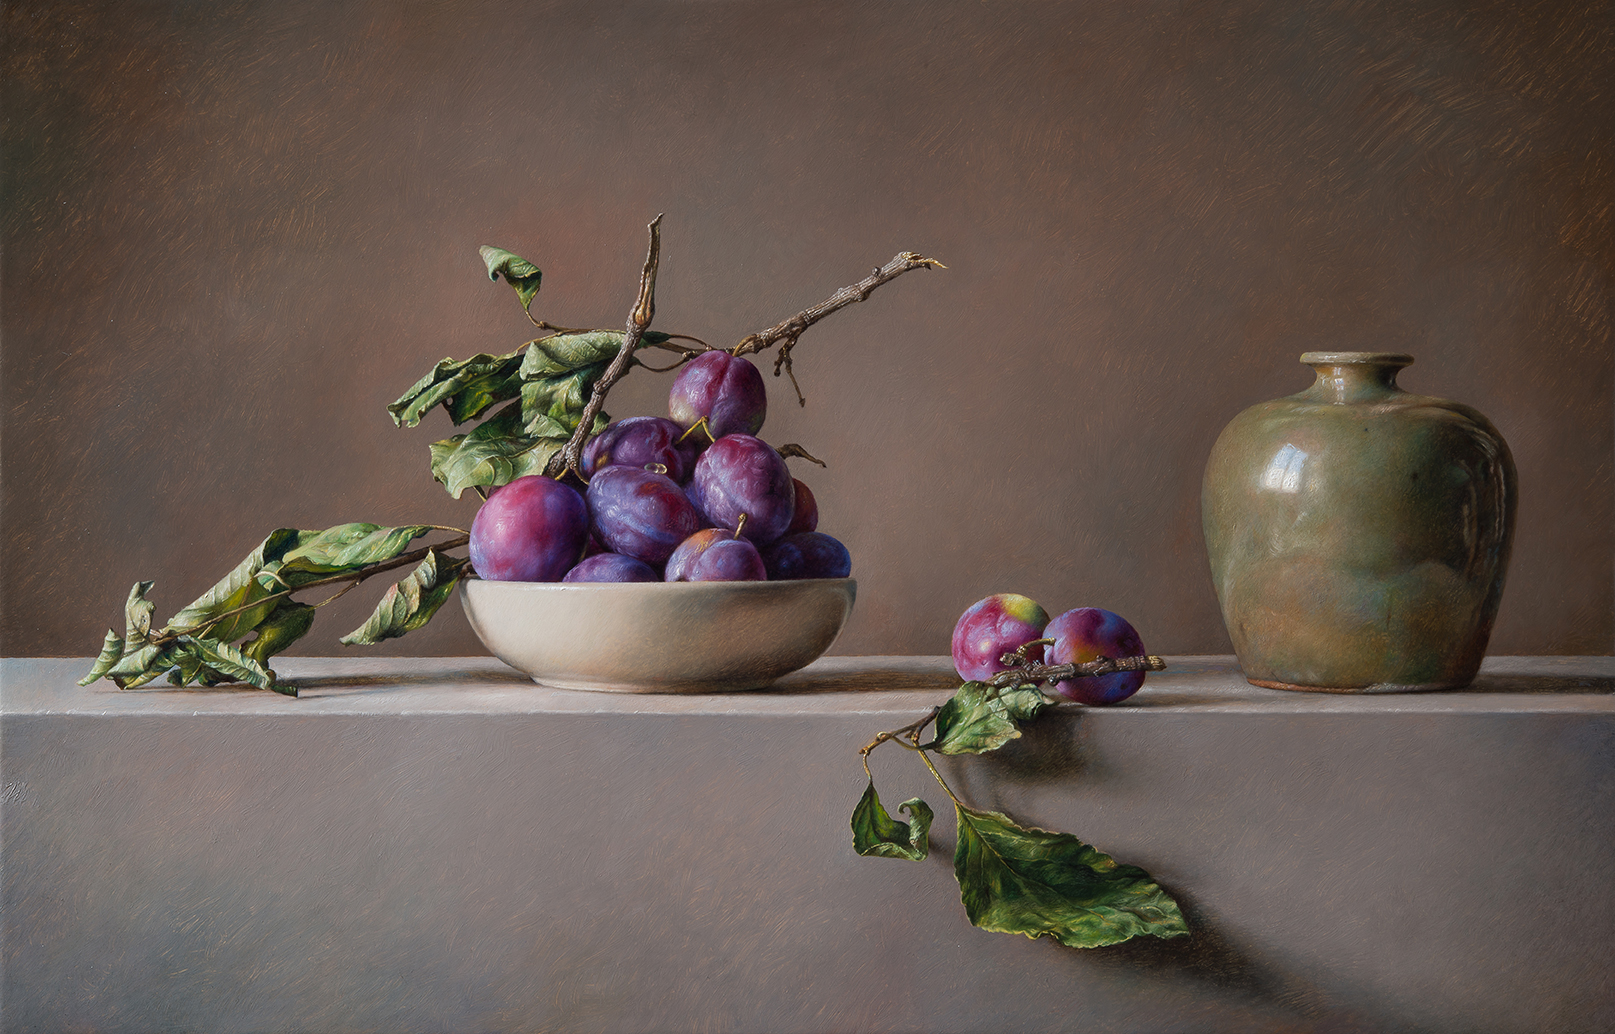 Composizione con prugne - 2016 olio su tavola incamottata cm 45x70 © Gianluca Corona